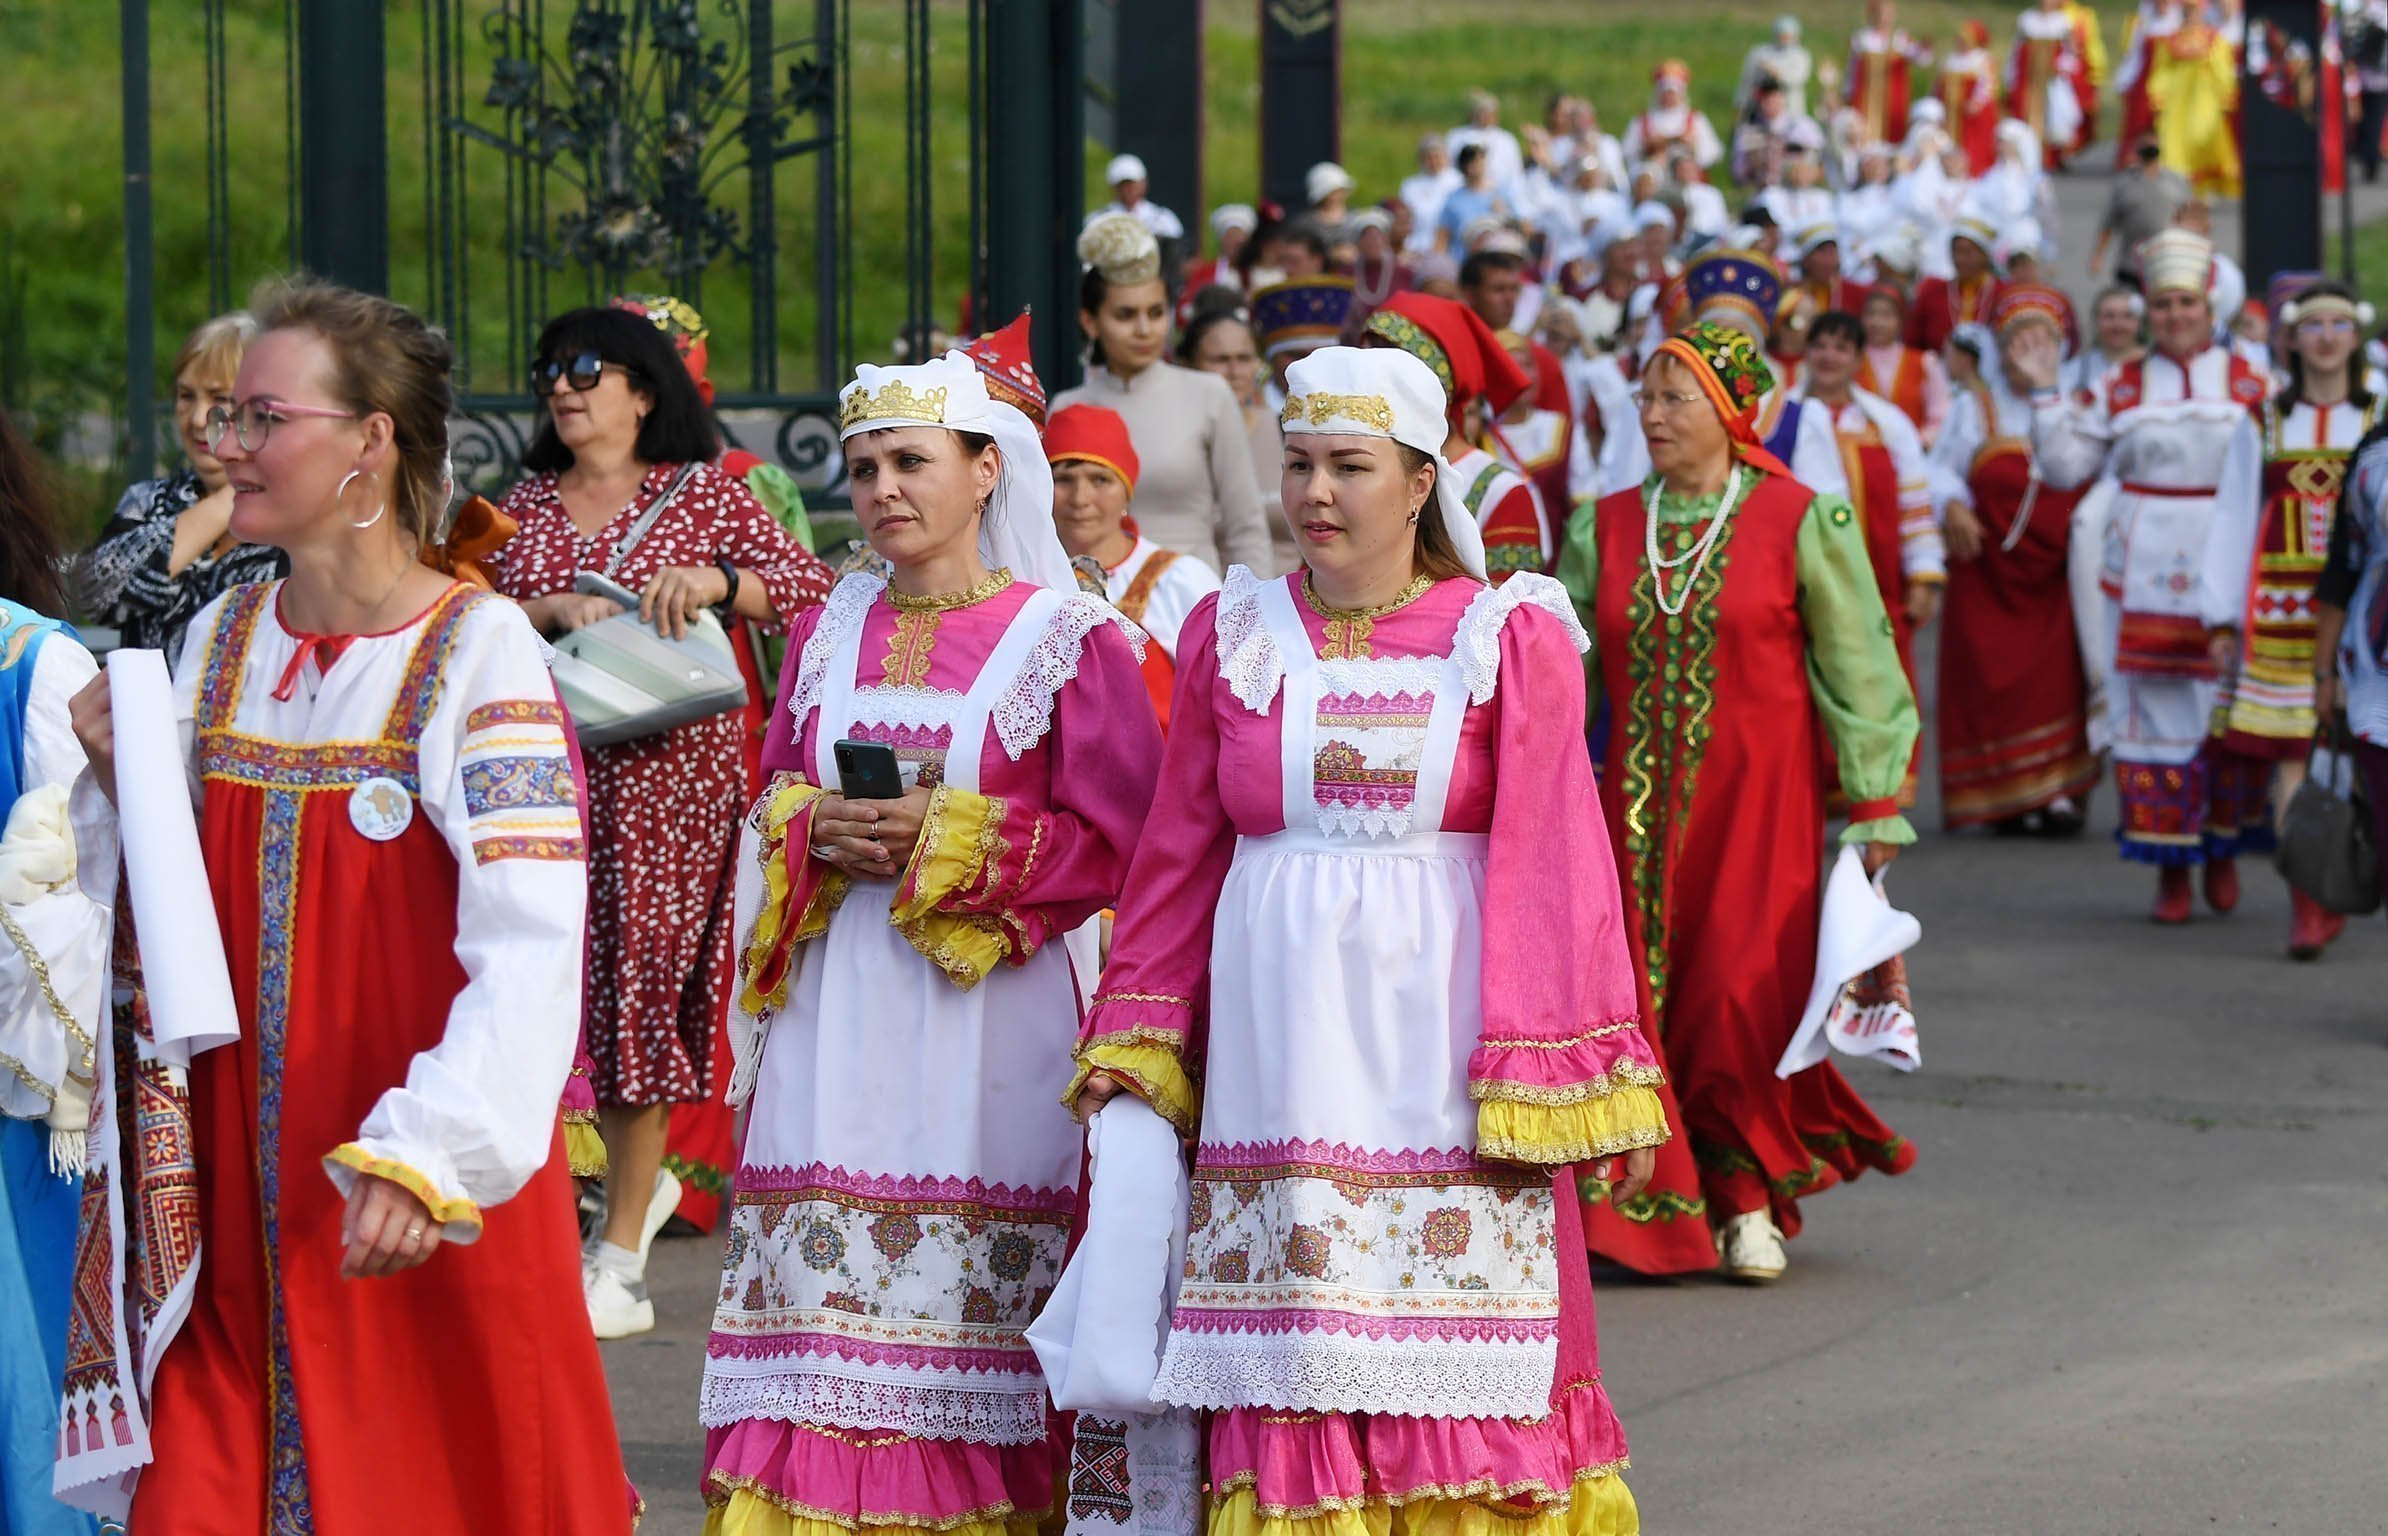 Шествие коллективов разных национальностей в традиционных  костюмах